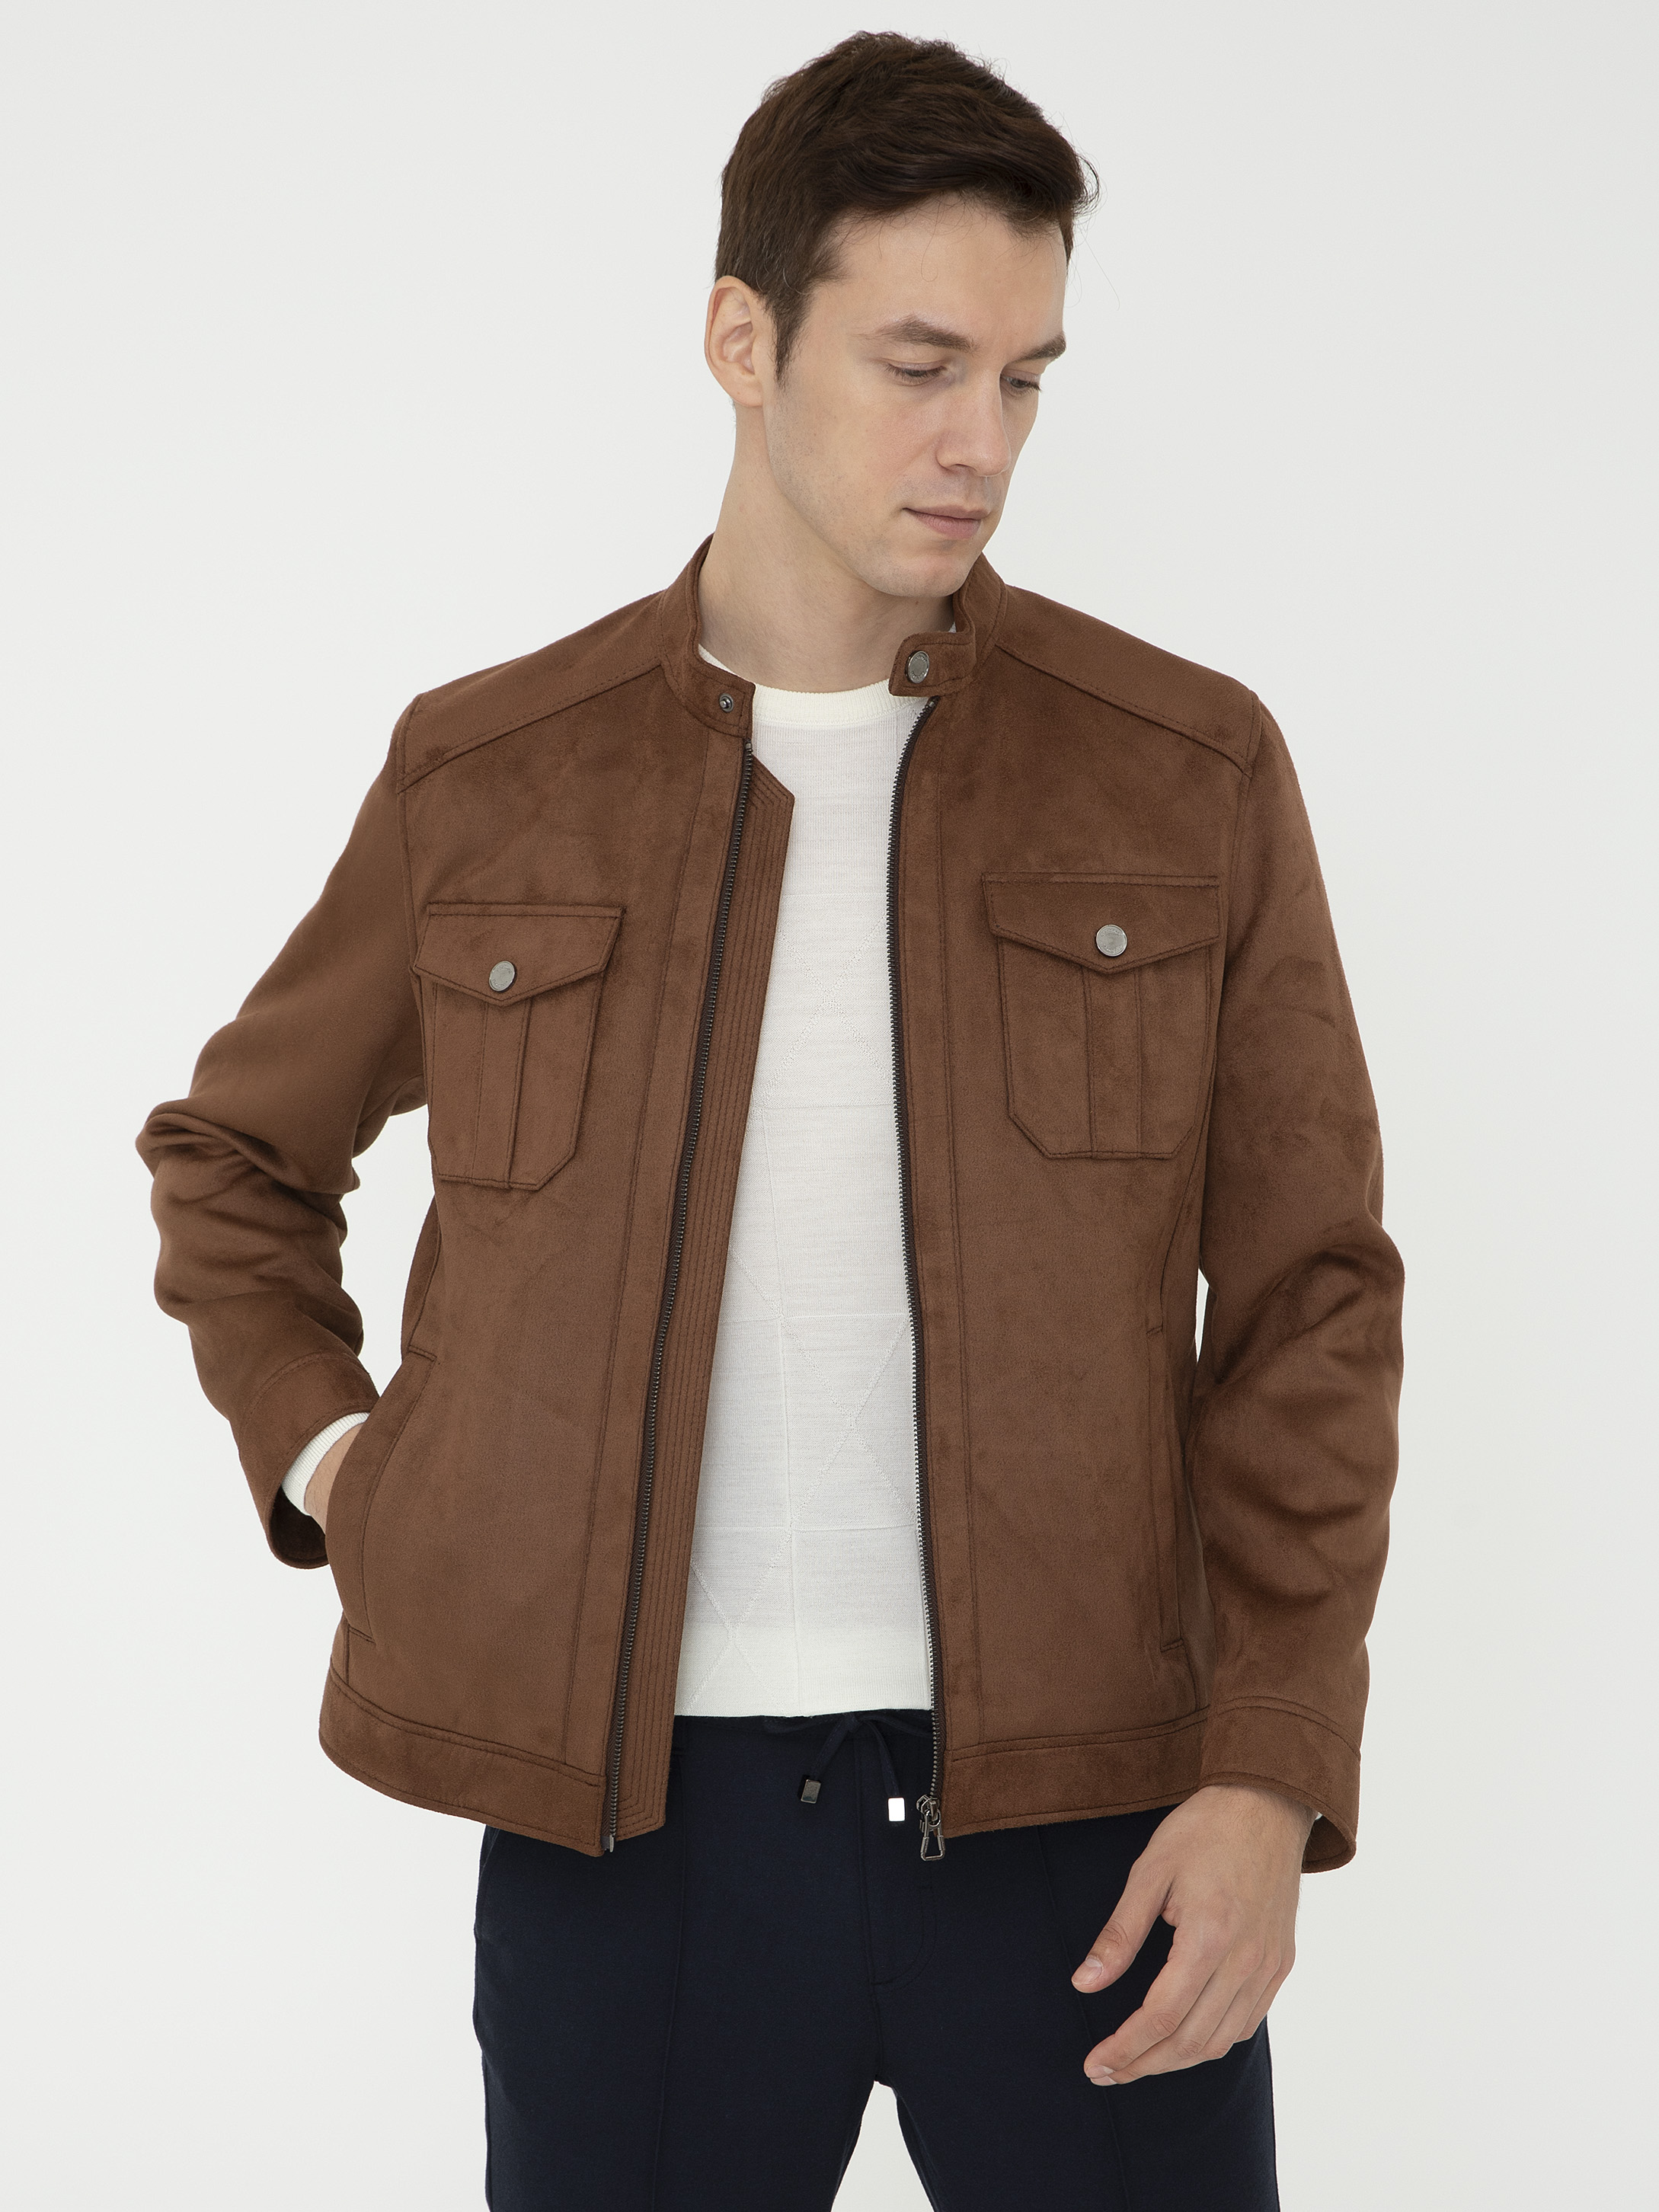 Куртка мужская Cacharel G051SZ0350VITALI коричневая 56